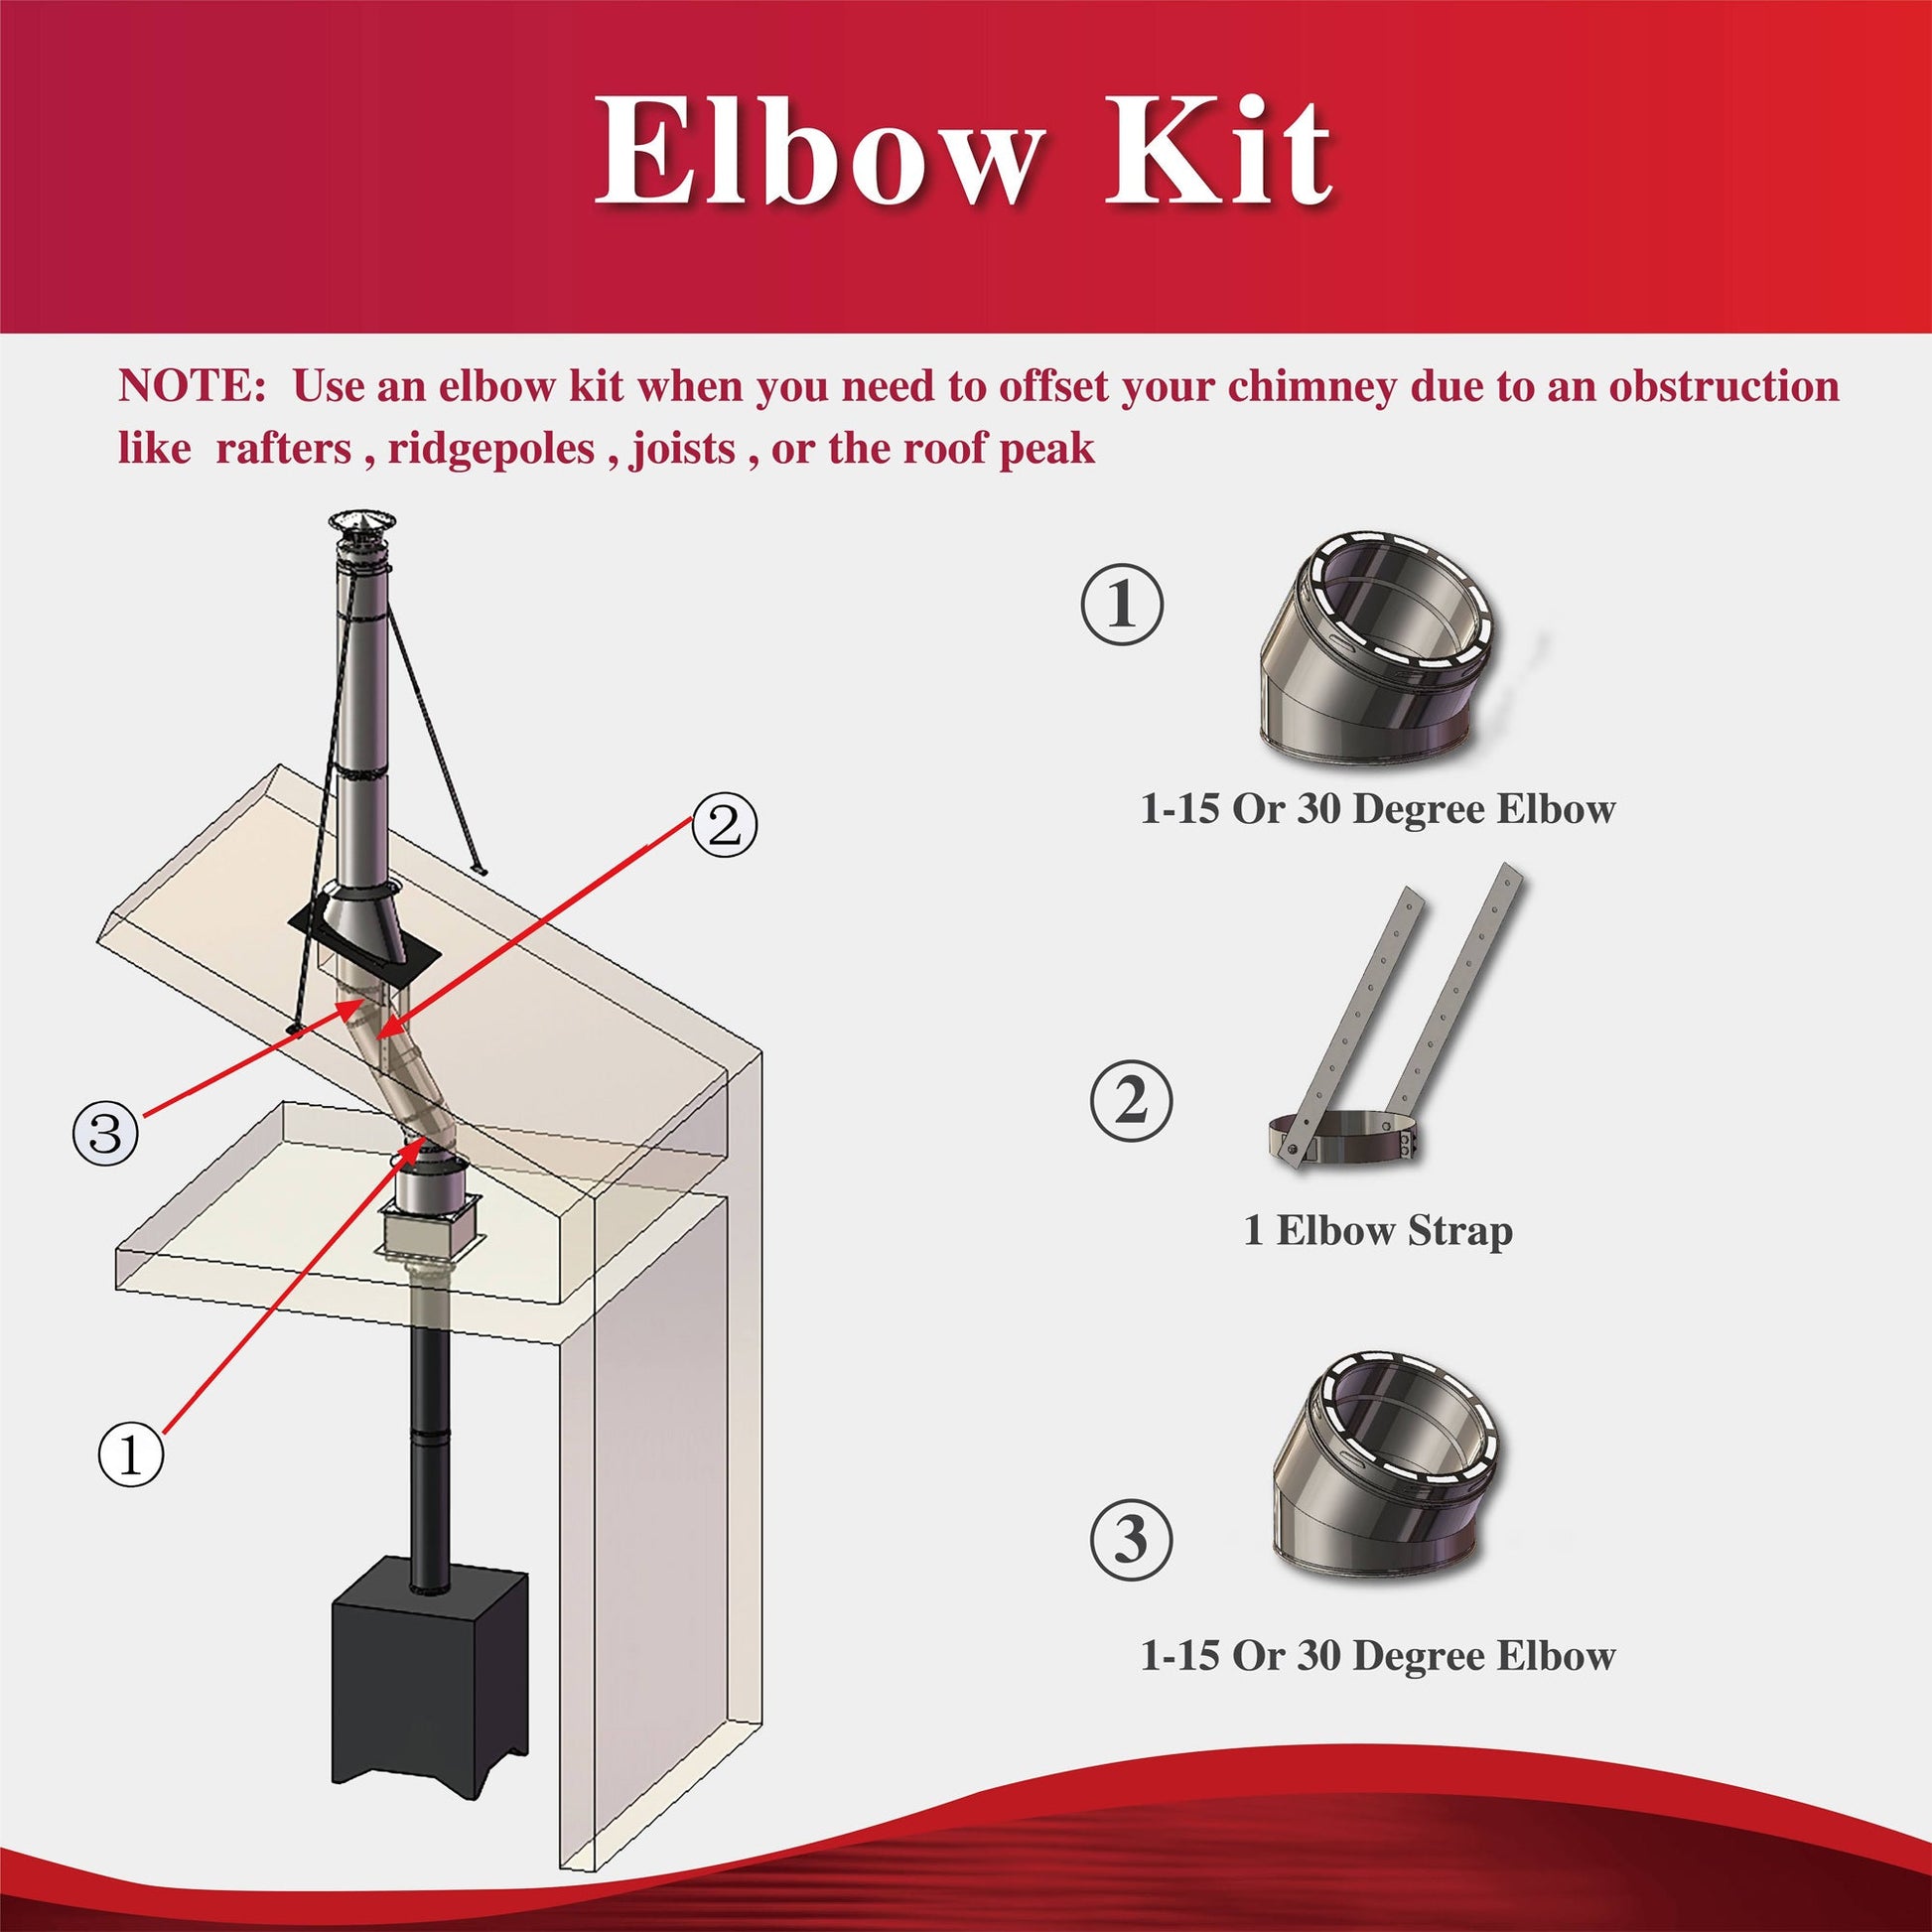 15 Degree Elbow Kit for 8" Inner Diameter Chimney Pipe